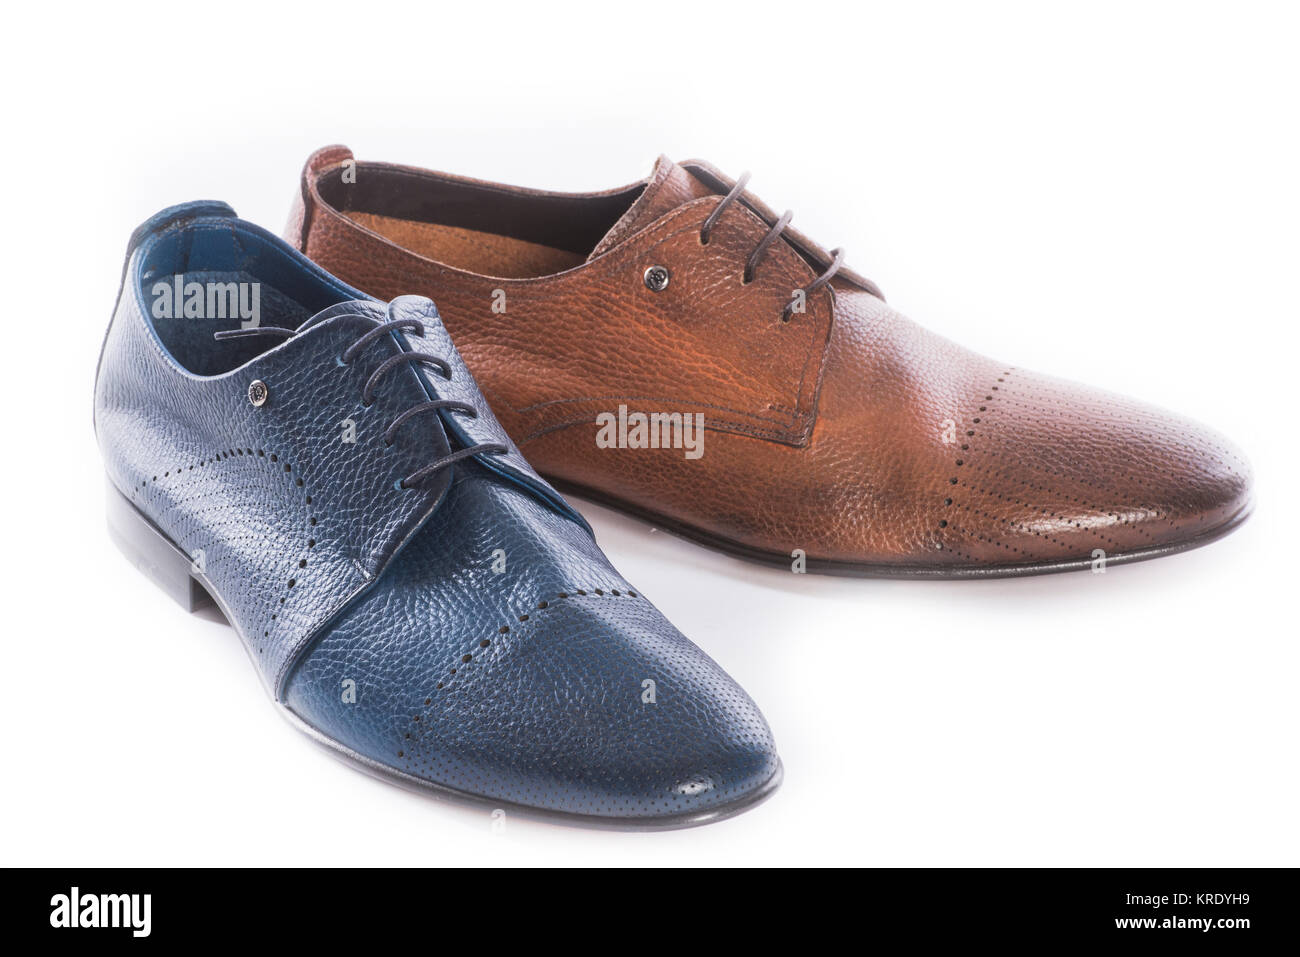 Collection Chaussures hommes - chaussures de couleurs différentes sur un fond blanc Banque D'Images